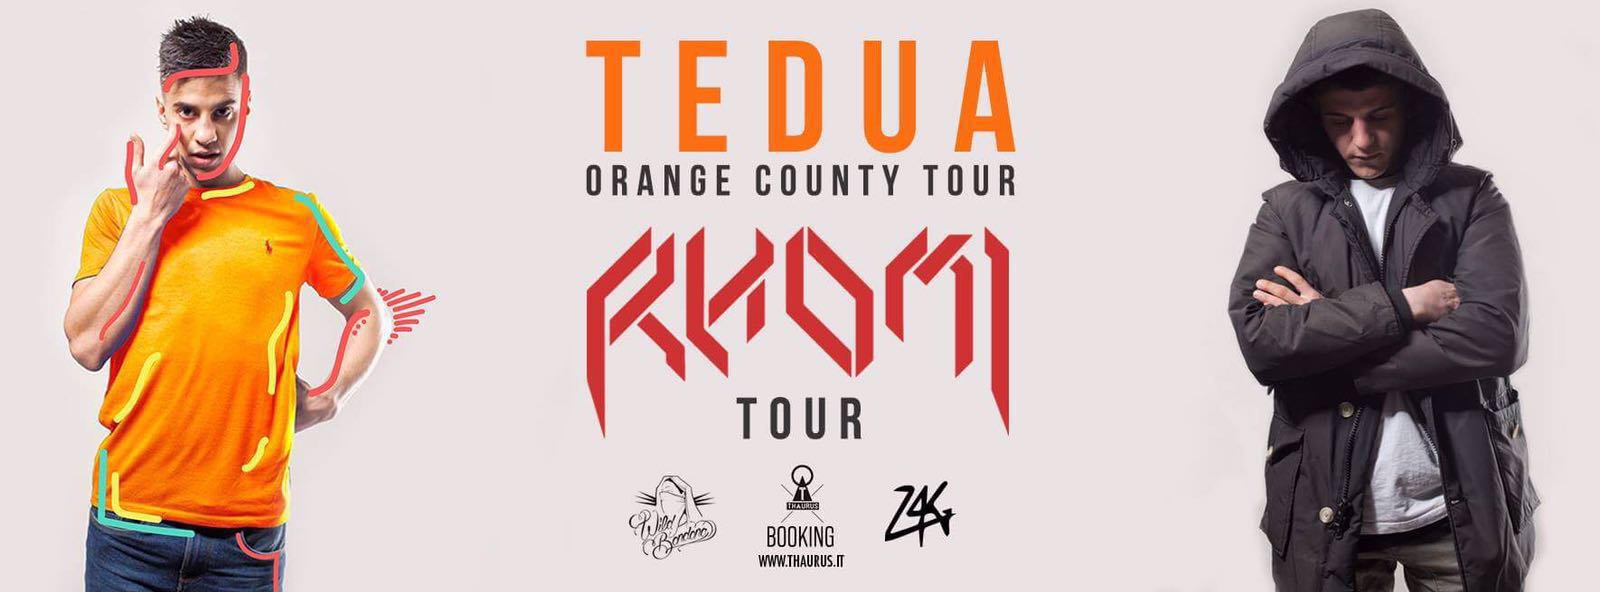 TEDUA - "ORANGE COUNTY" TOUR